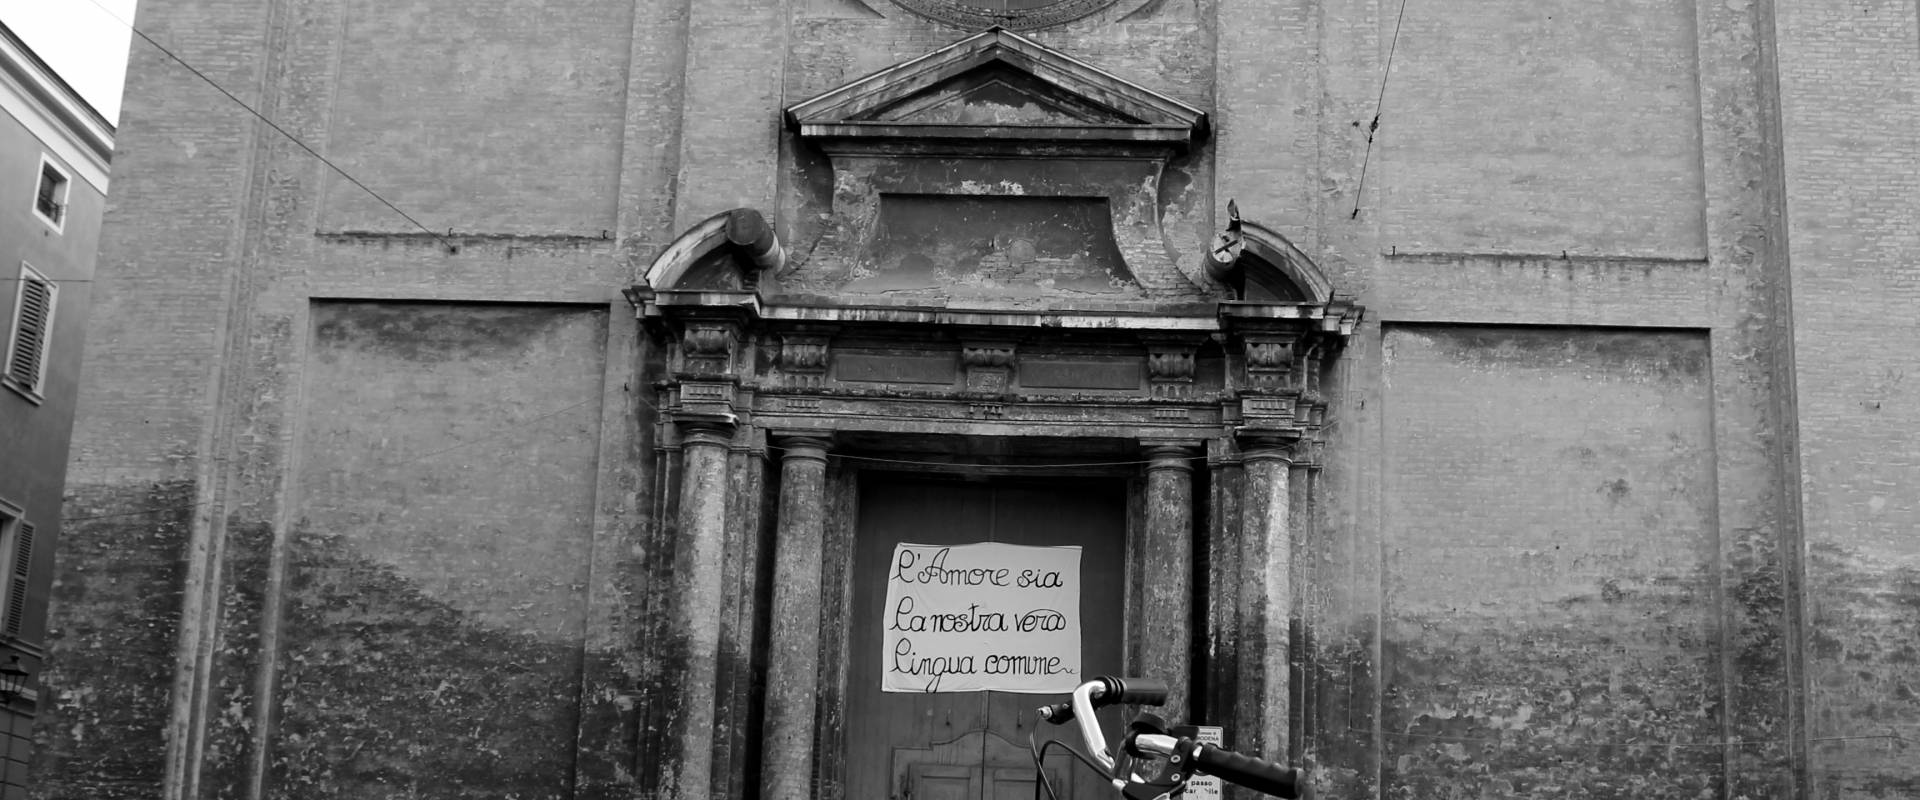 Facciata di Sant'Agostino bianco e nero photo by BeaDominianni